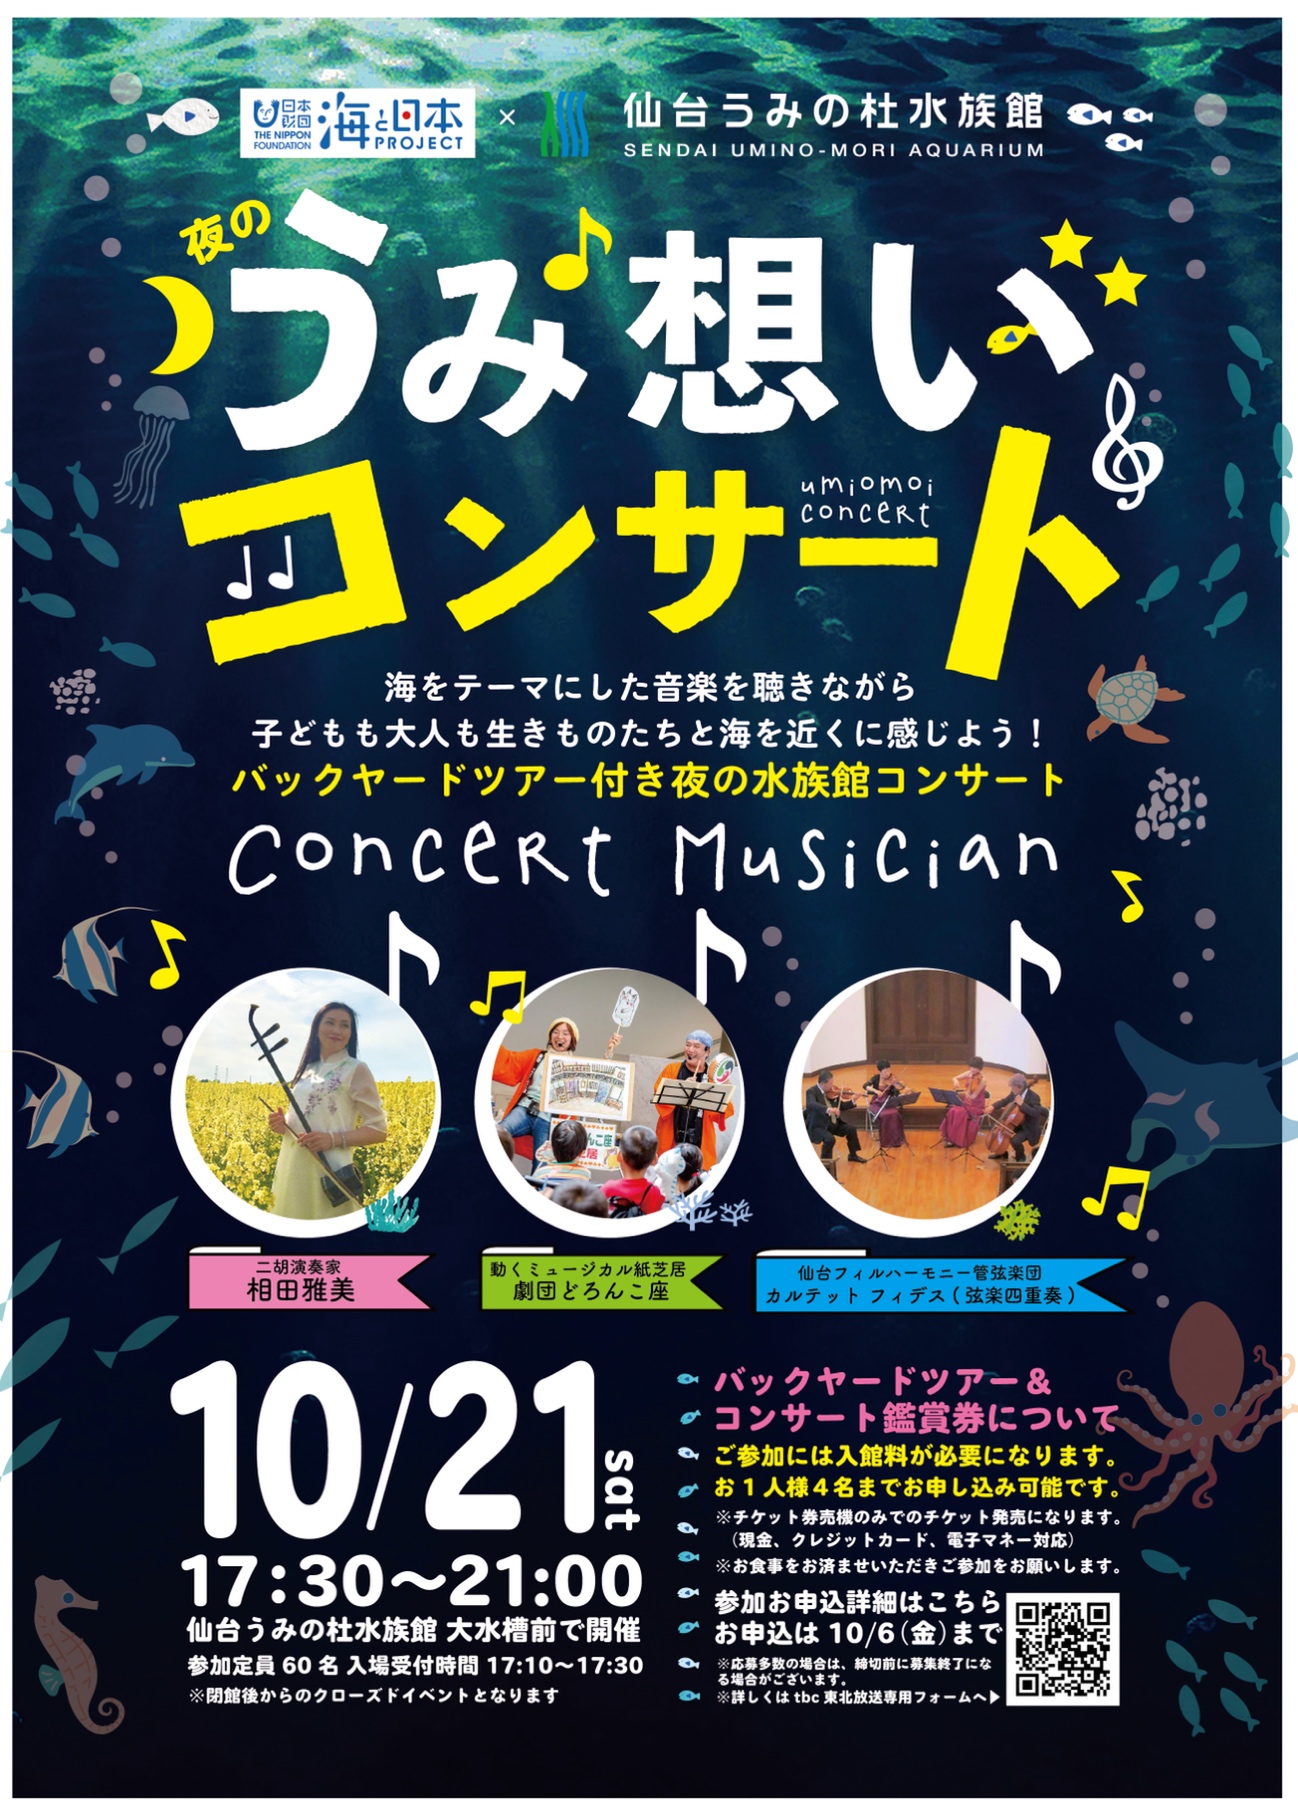 夜の仙台うみの杜水族館で「うみ想いコンサート」開催。参加者60名を募集中